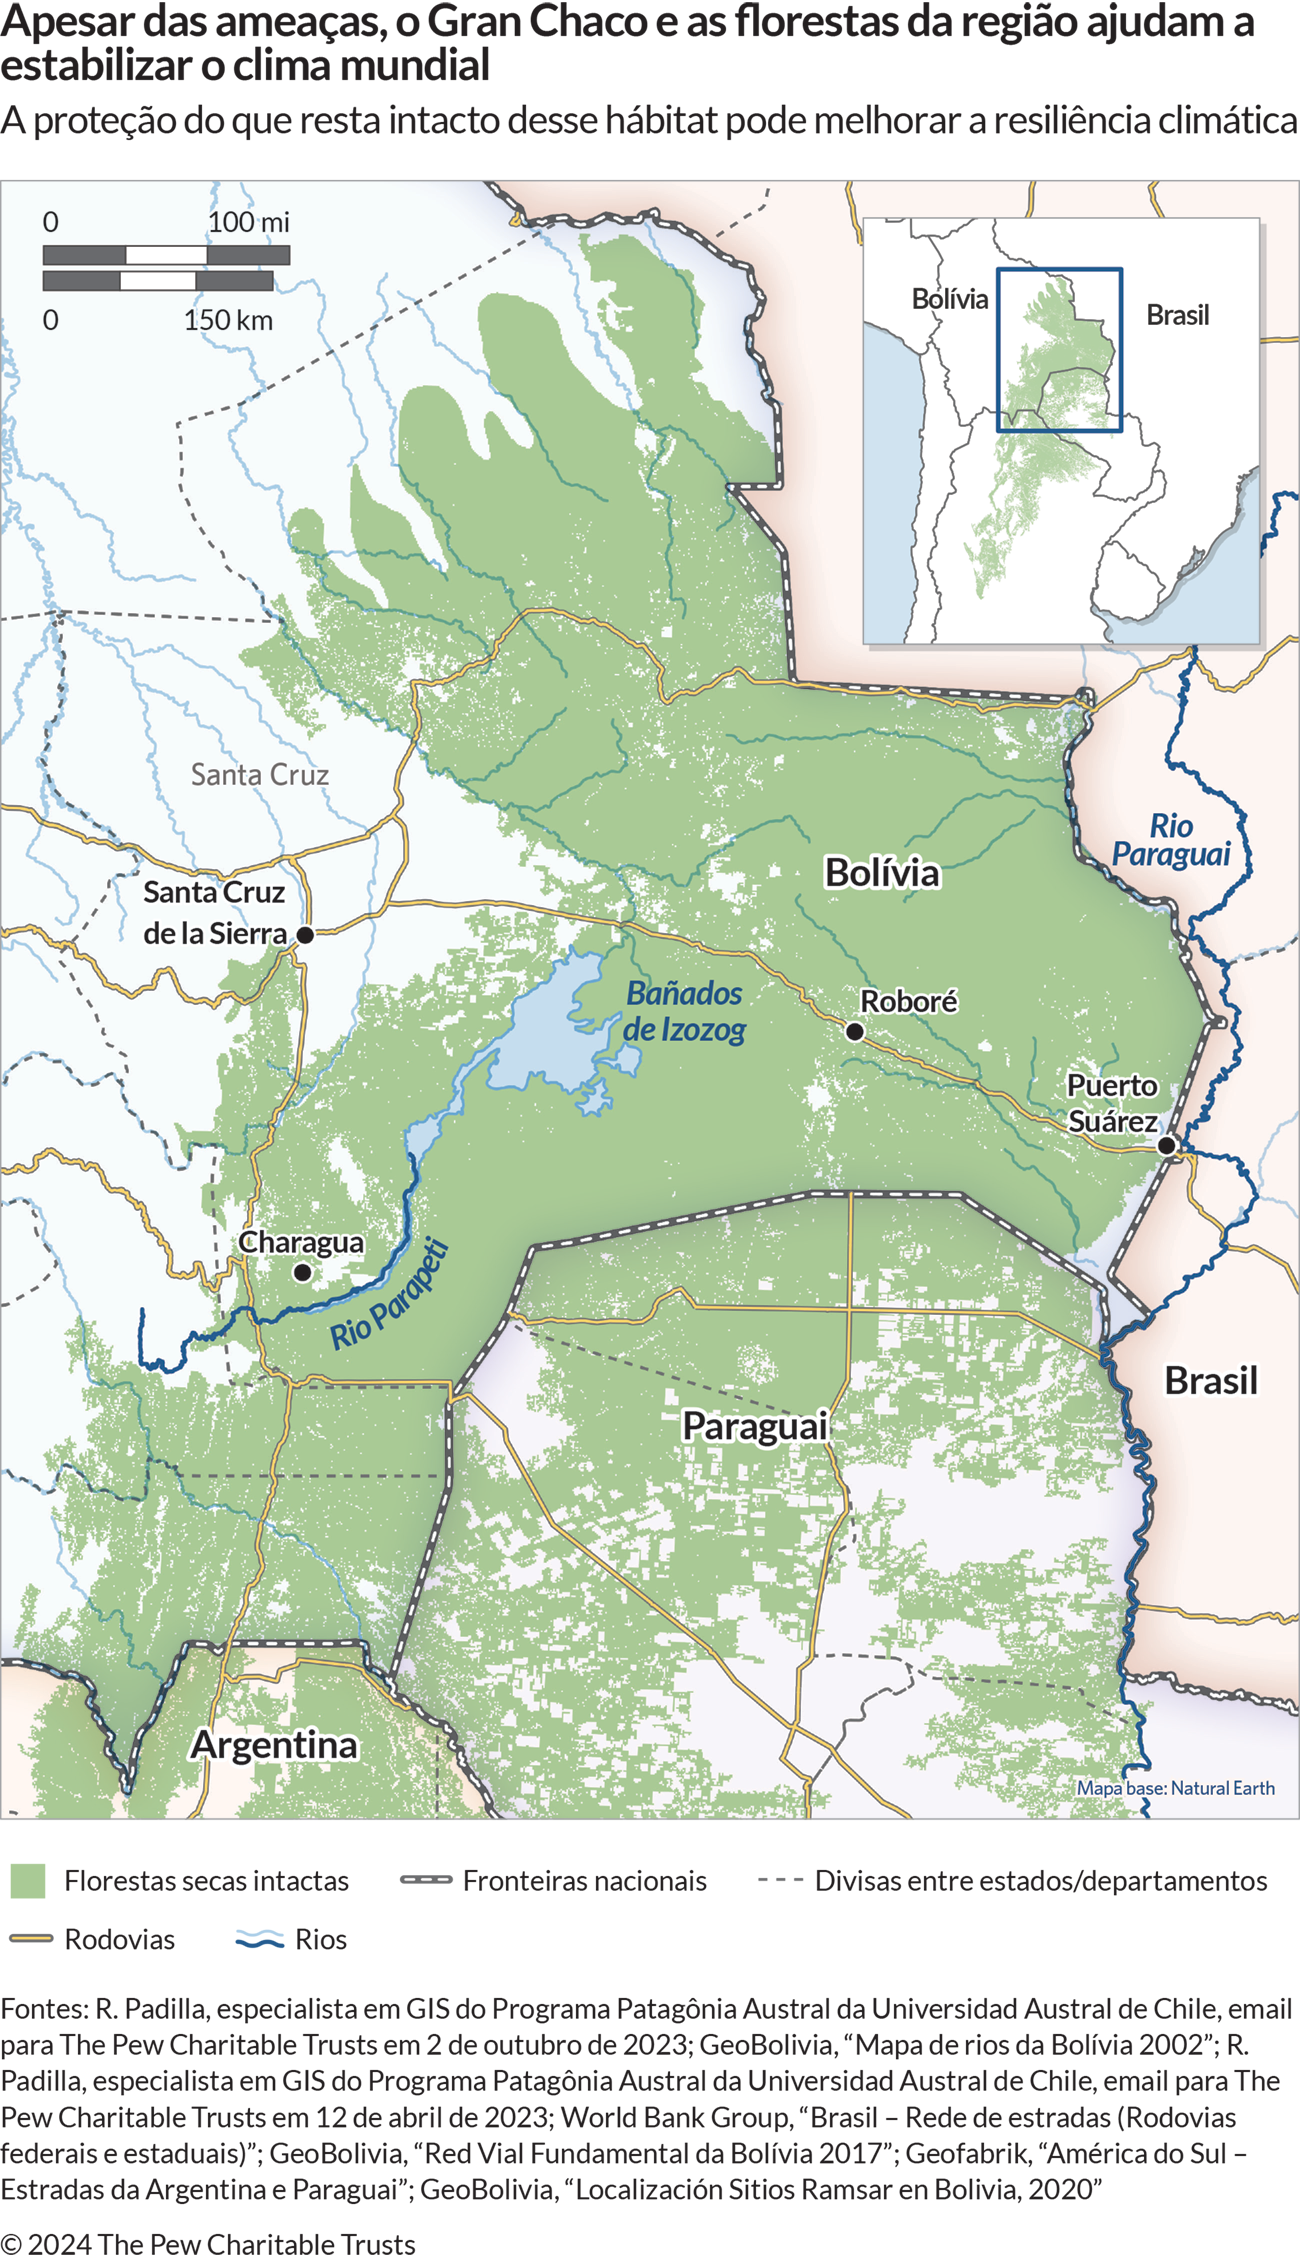 Um mapa mostra a região da América do Sul ao redor da fronteira entre Bolívia, Brasil e Paraguai, com uma grande área em verde-escuro. Estão identificados também alguns rios, rodovias, cidades, estados e departamentos